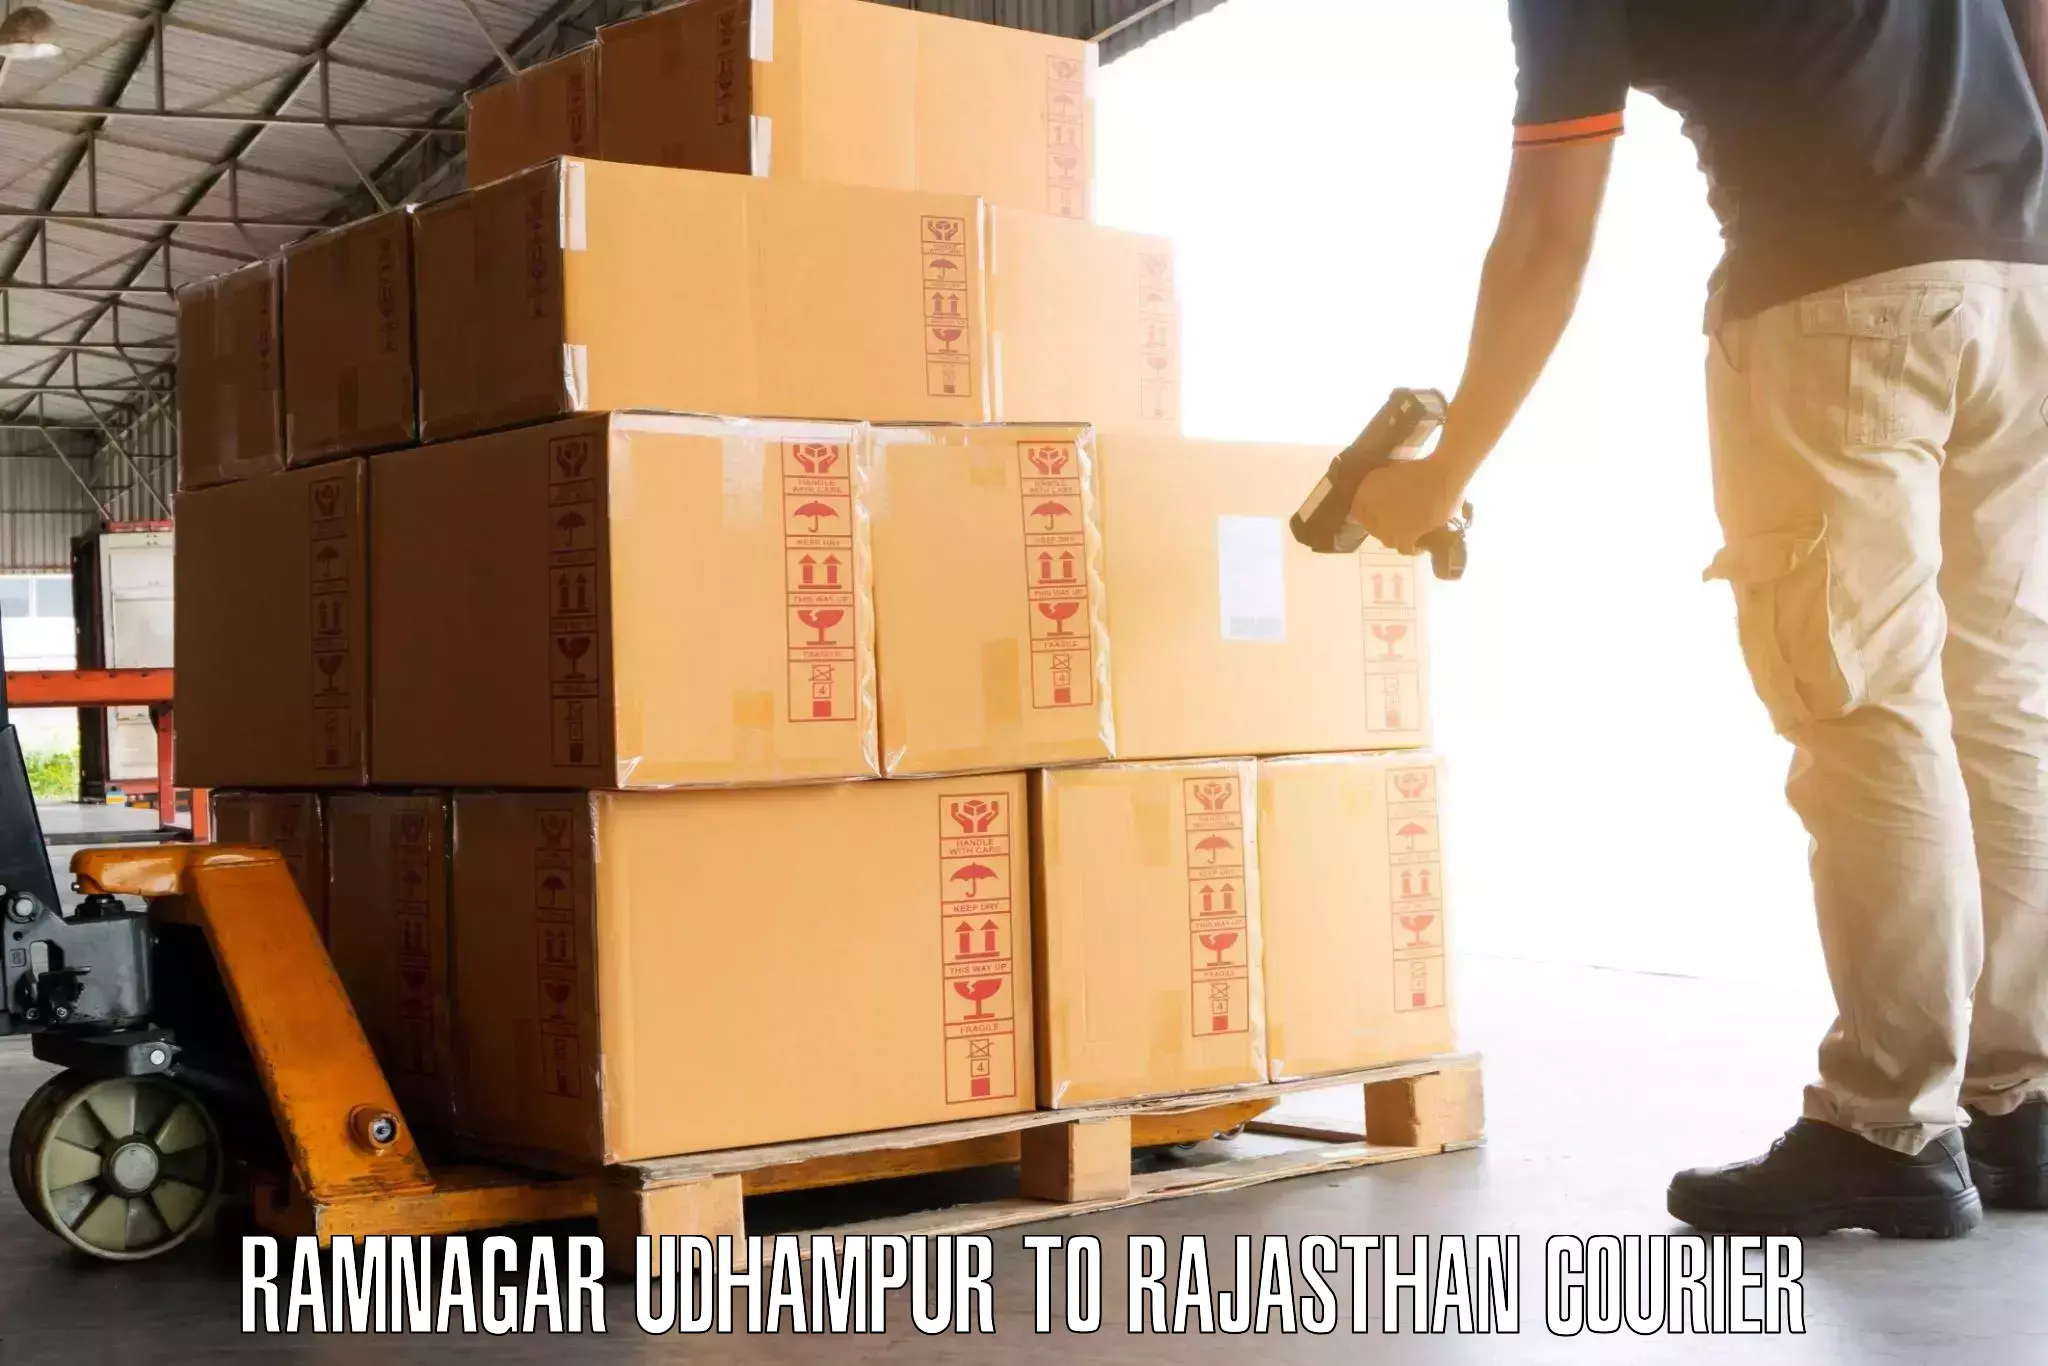 Luggage shipment tracking Ramnagar Udhampur to Achrol